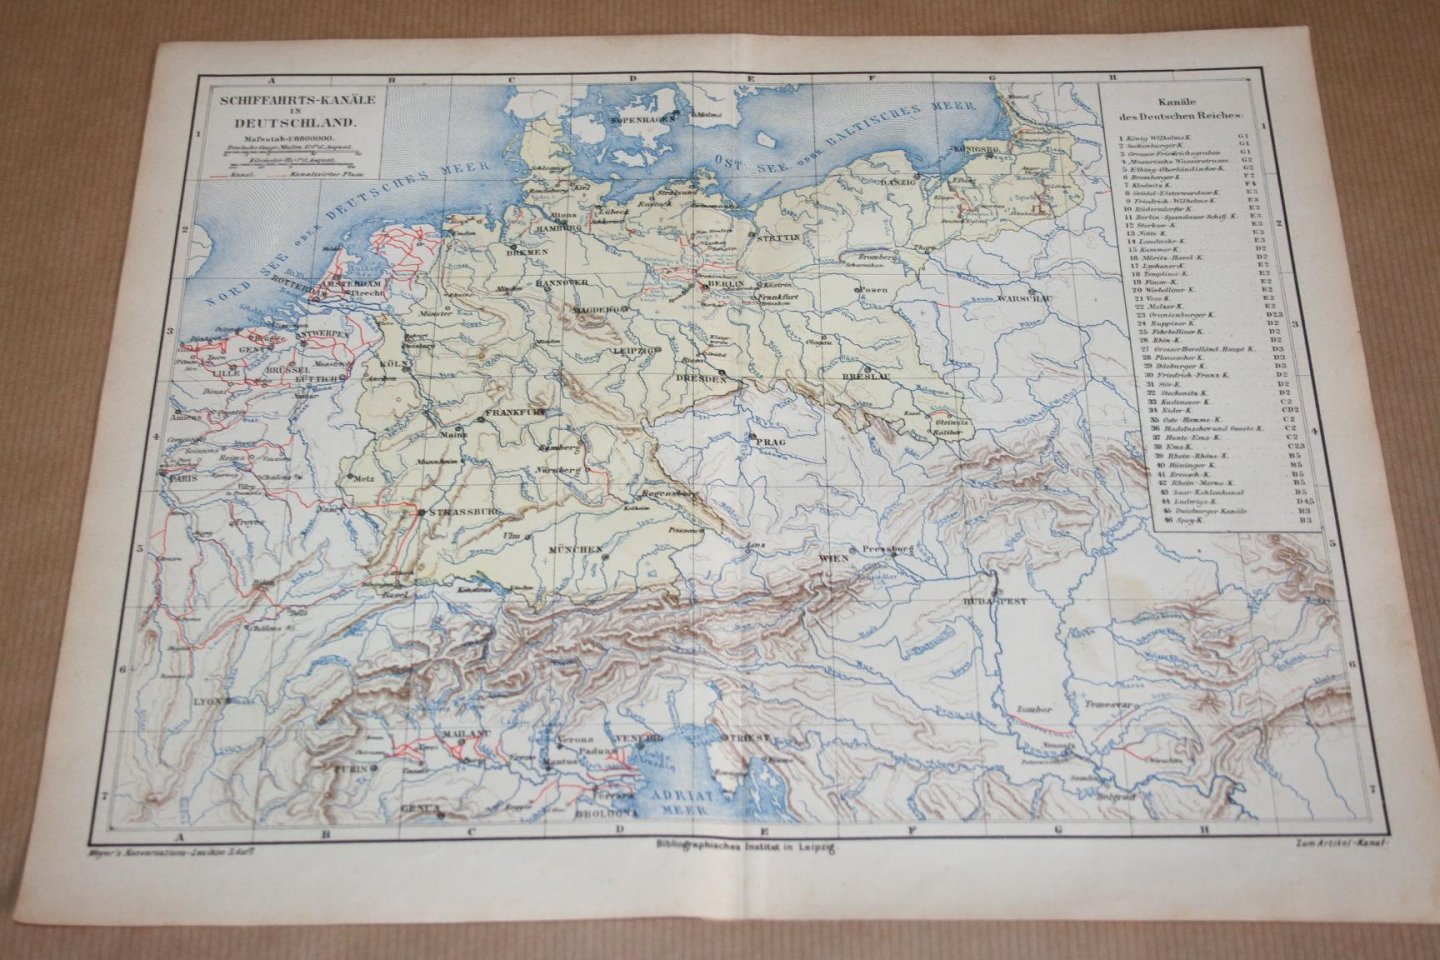  - Antieke kaart - Waterwegen van Duitsland  - Circa 1875